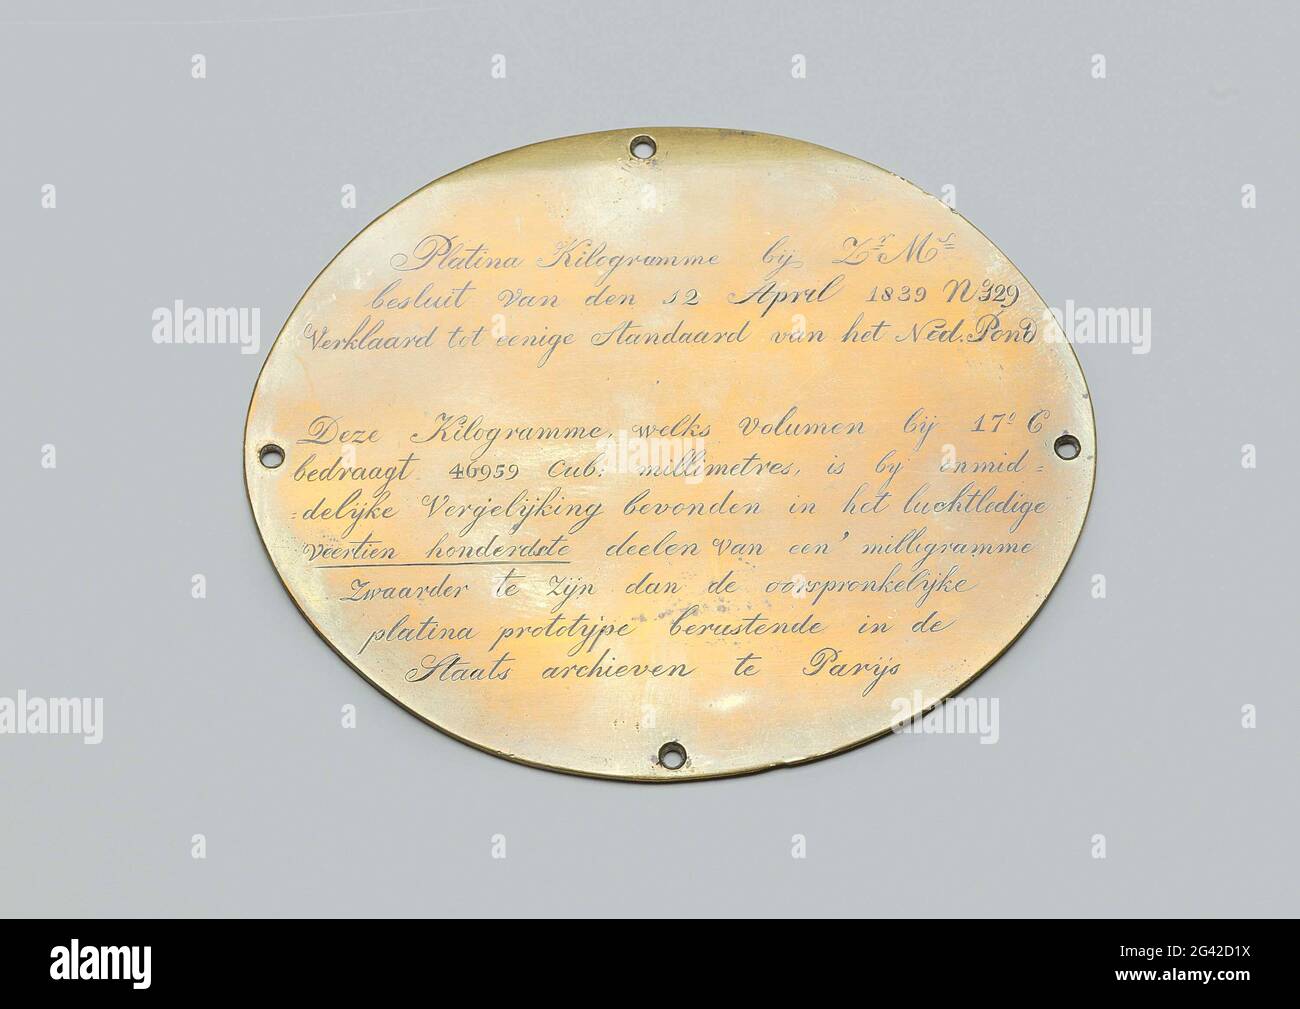 Bild bei Platinstandard von 1 kg. Eine Kupferplatte mit Aufschrift (NG-2001-16-D-11-A), (vermutlich) aus einem Karton, in dem der Standard gelagert wurde (Reisekassette). Stockfoto